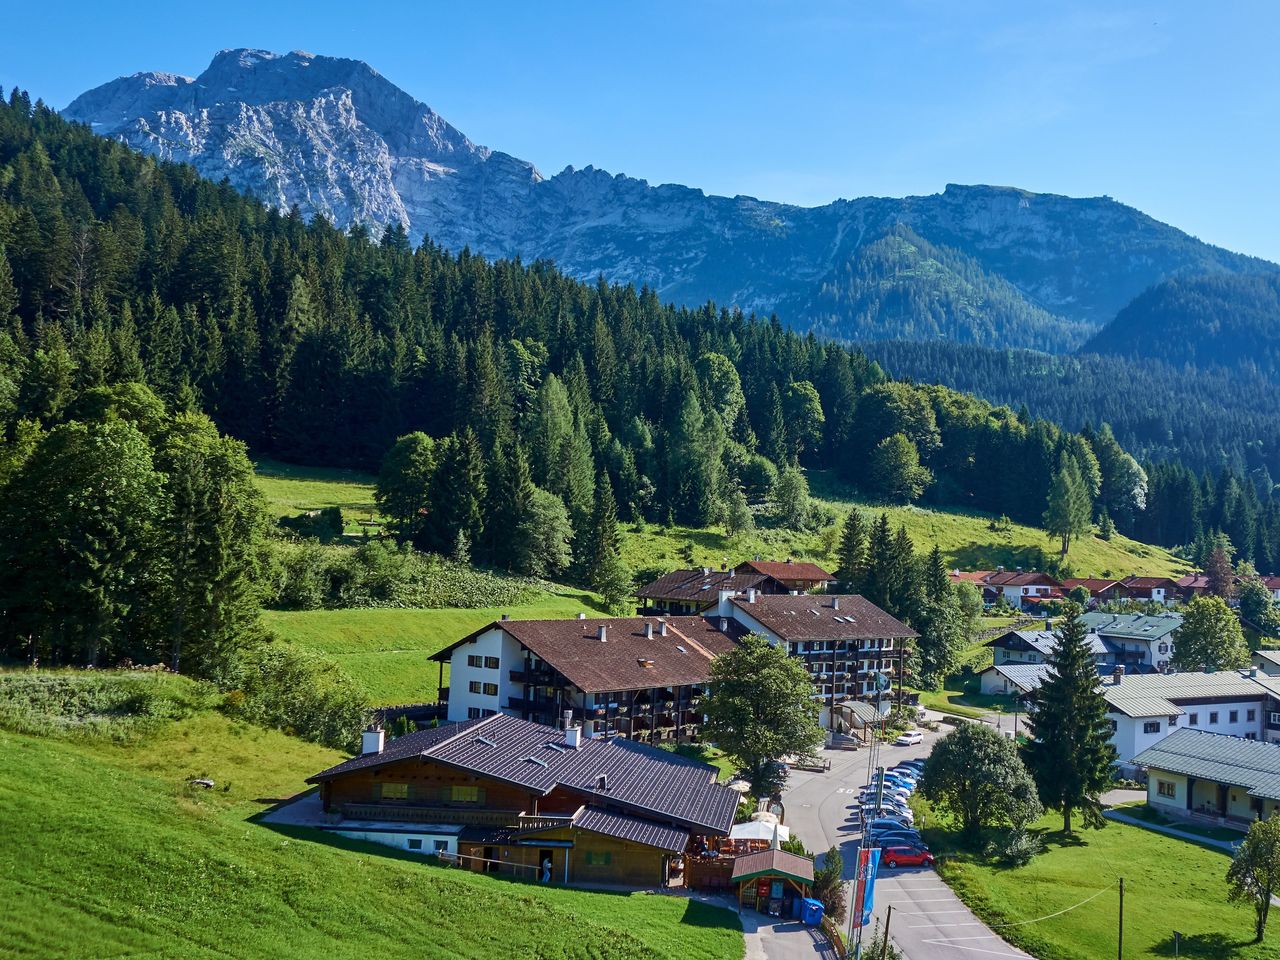 4 Erlebnistage auf 1000 Meter im Berchtesgadener Land